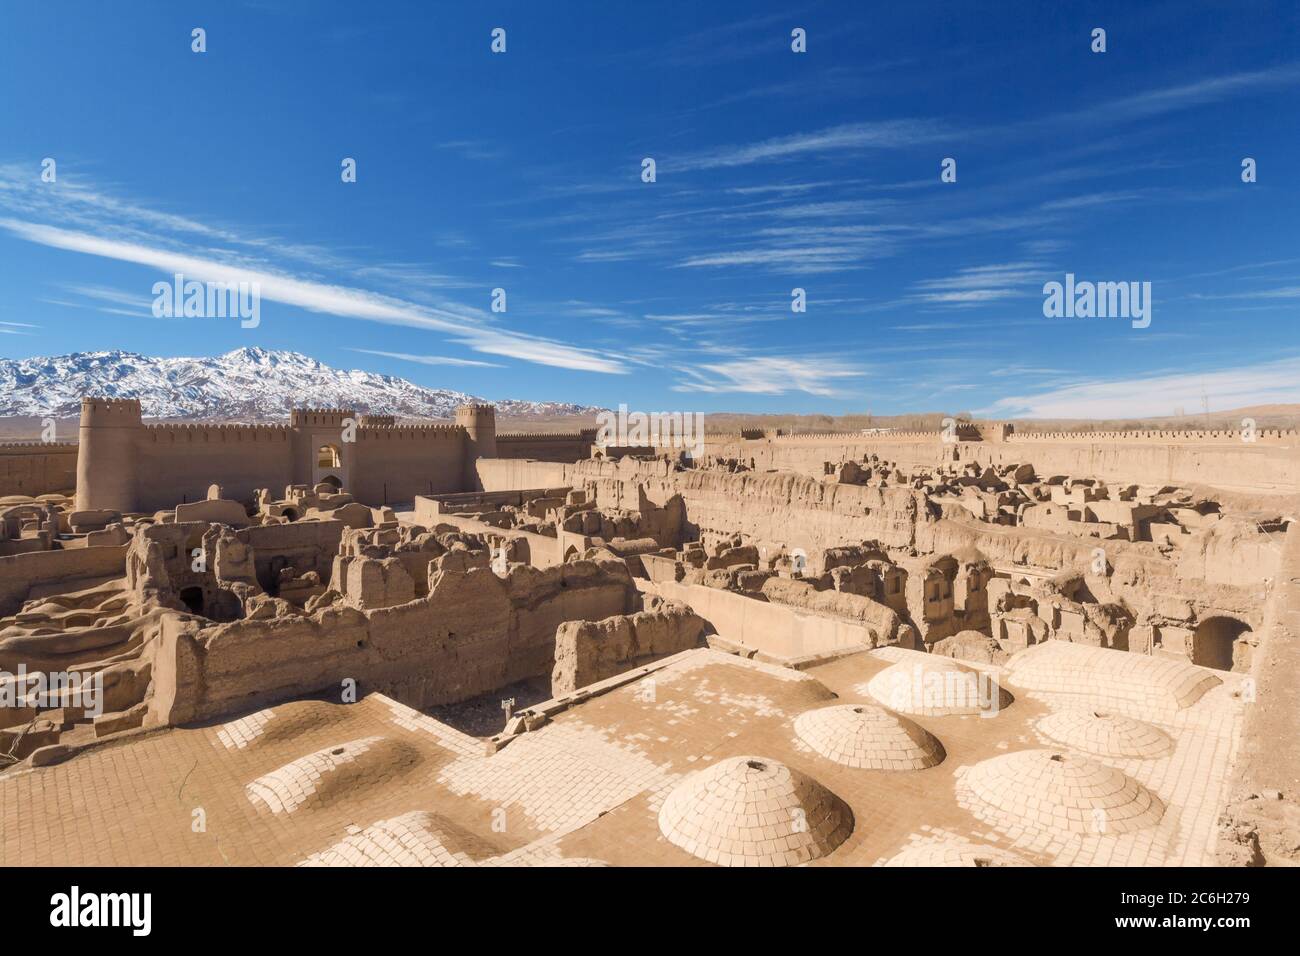 Die antike Stadt aus Sand gebaut in der Nähe Kerman. Heute aufgegeben, ähnlichen Platz wie Bam, kleinere, aber heute sieht besser aus Dann nur noch Ruinen. Zitadelle R Stockfoto